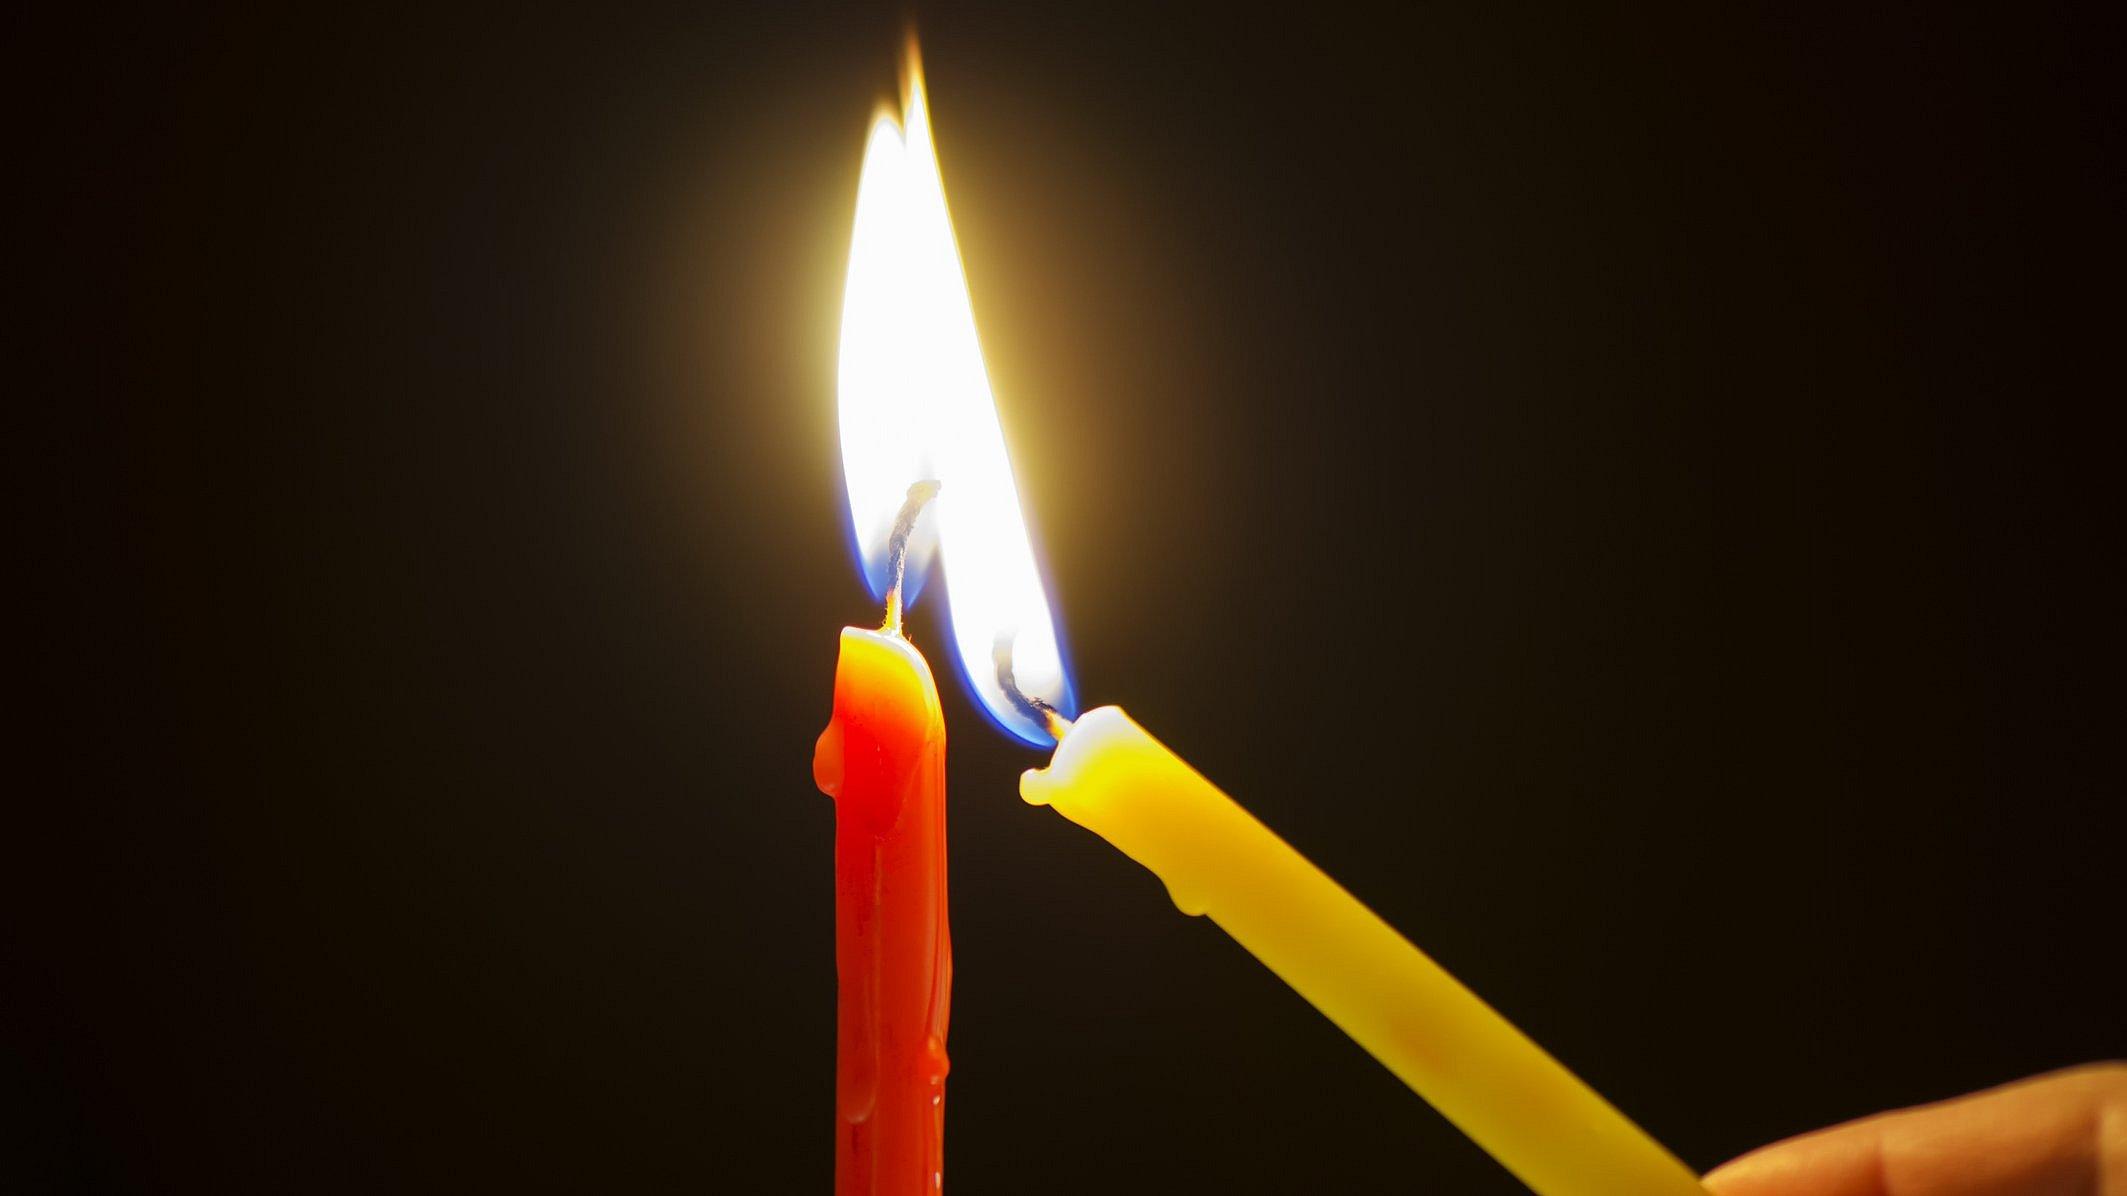 Eine gelbe schmale Kerze wird an einer roten schmalen Kerze angezündet.